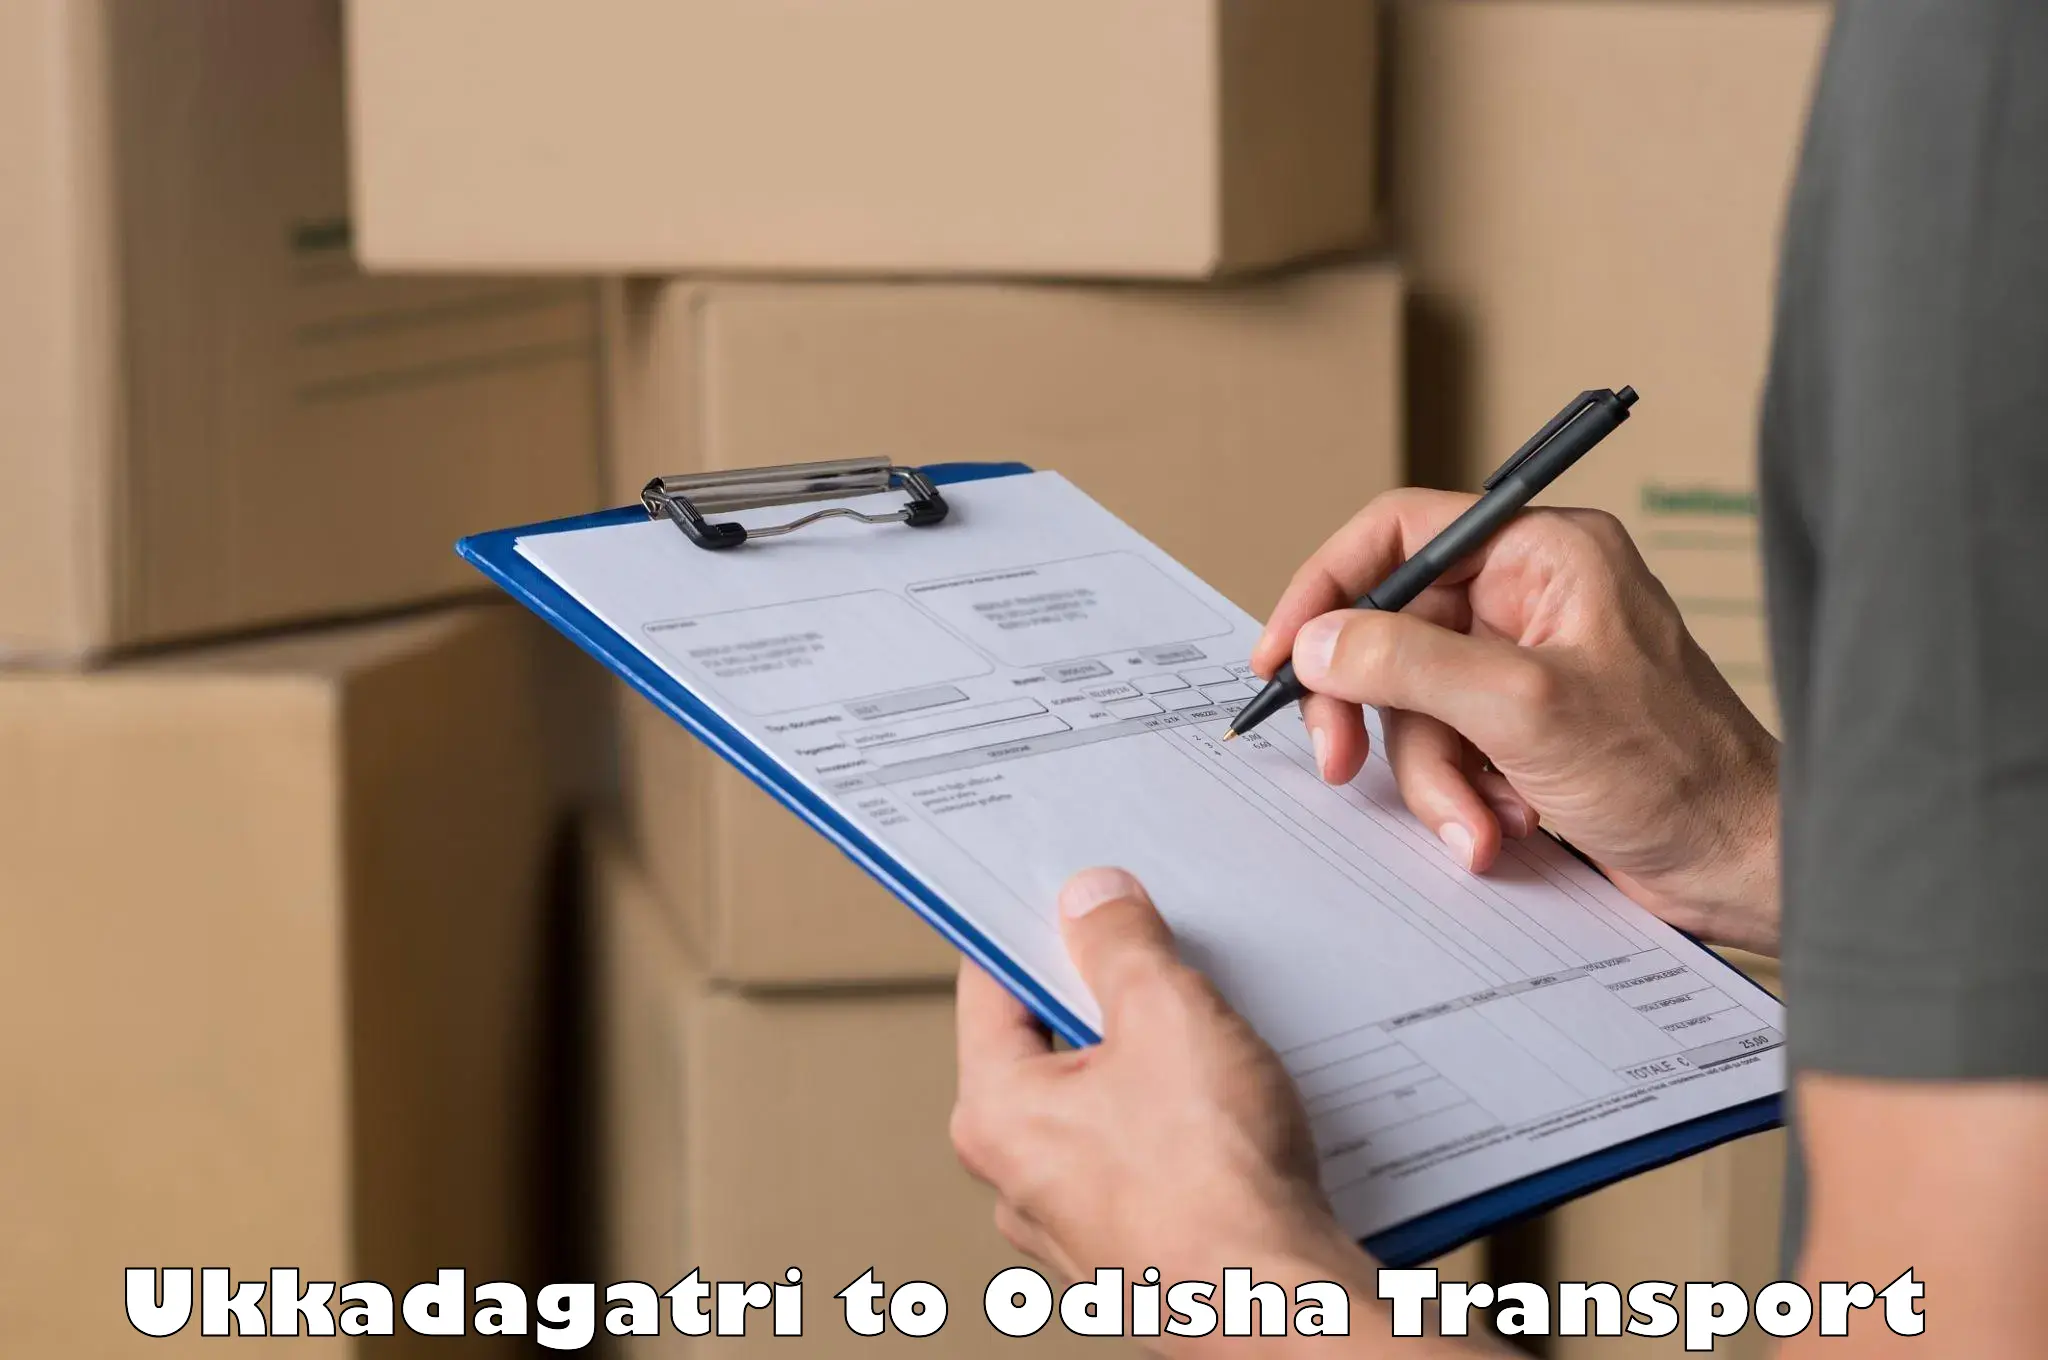 Transport shared services Ukkadagatri to Bissam Cuttack